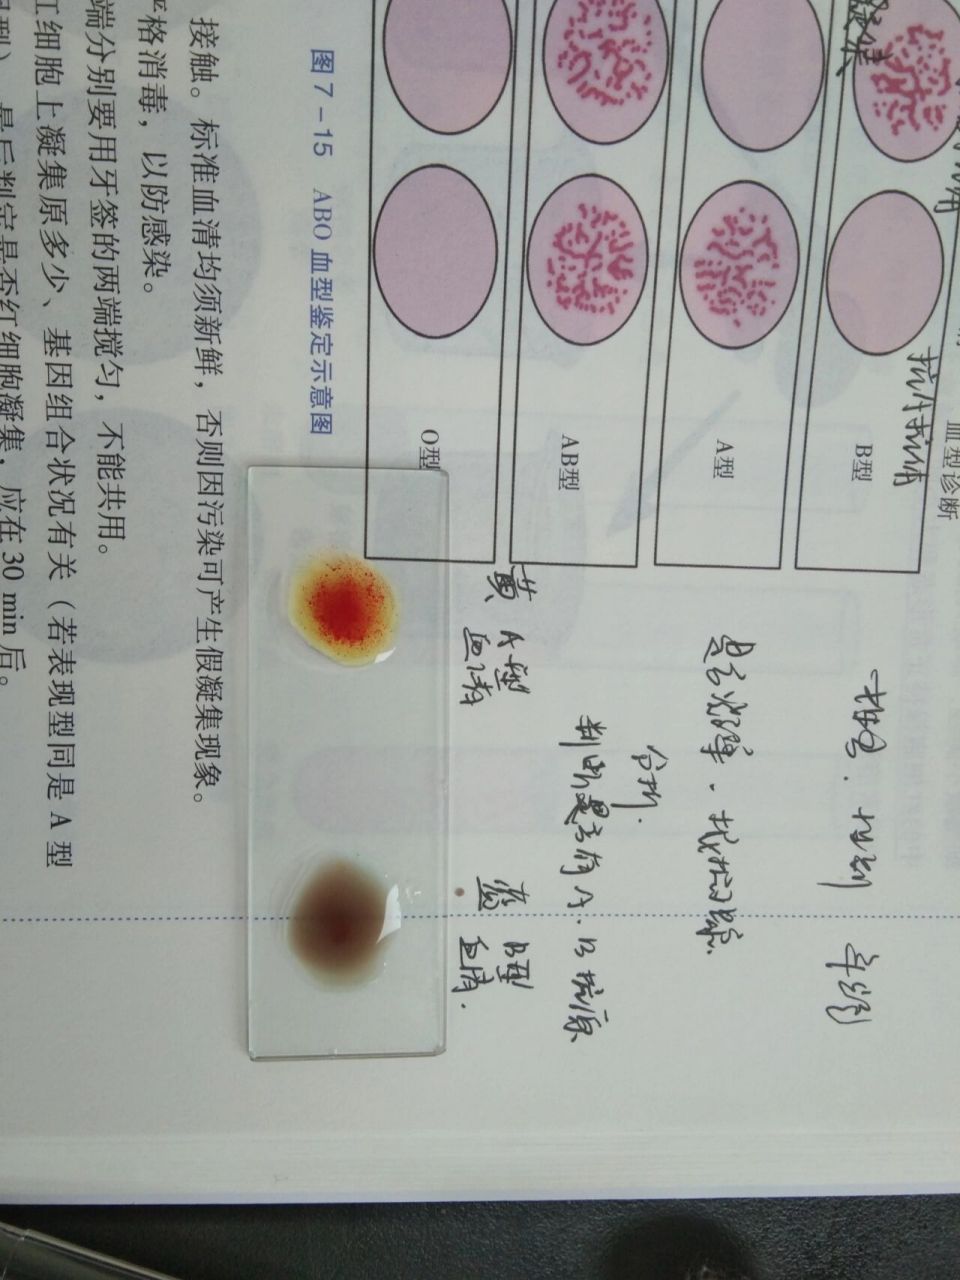 abo血型鉴定结果图图片